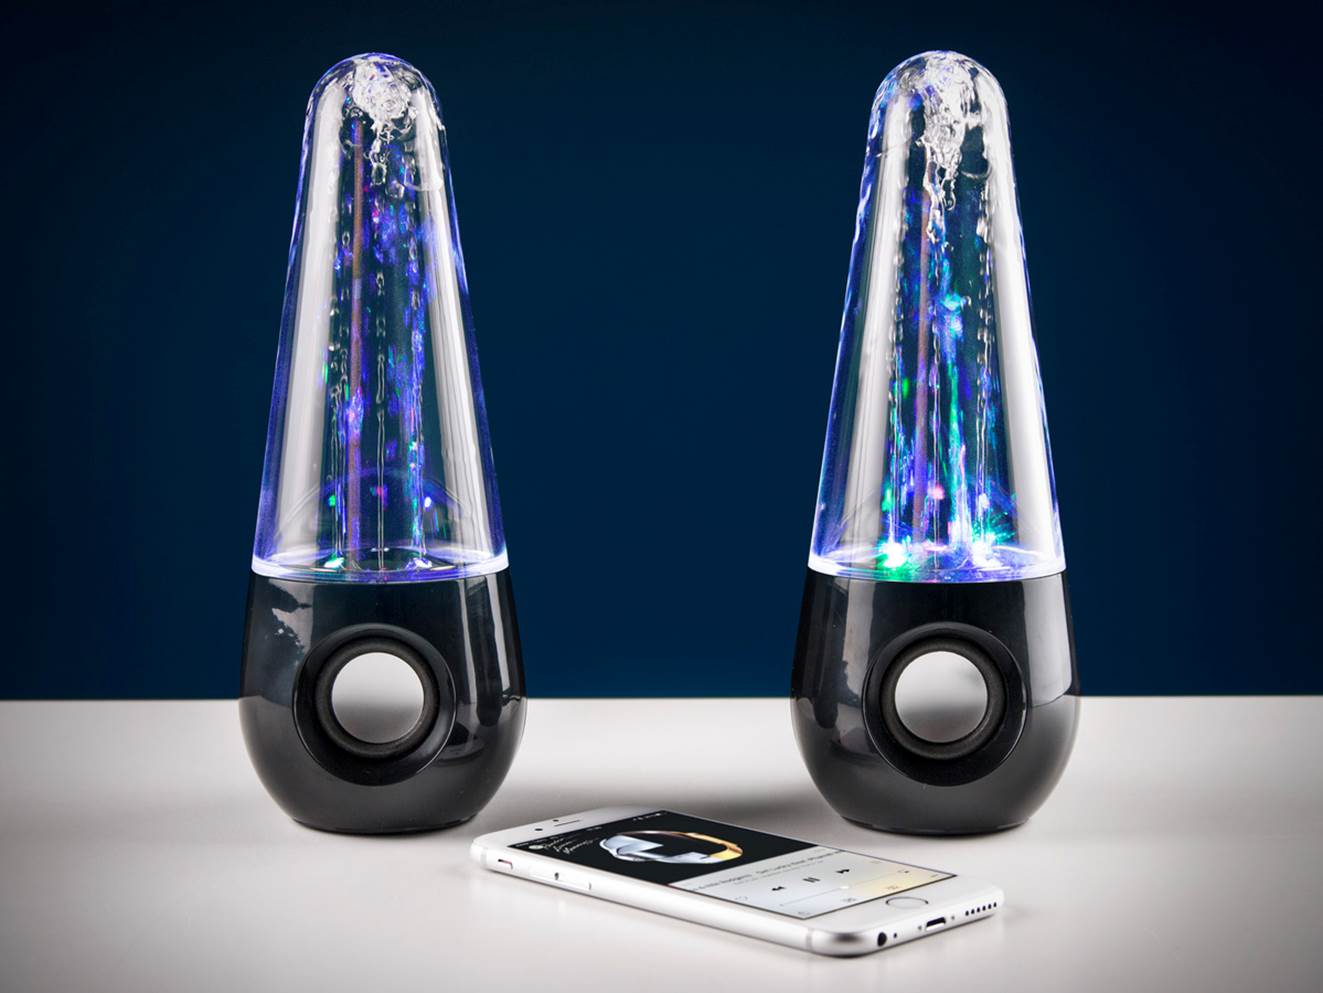 Lautsprecher Dancing Water USB Musik Speaker 2x Computerlautsprecher T8 